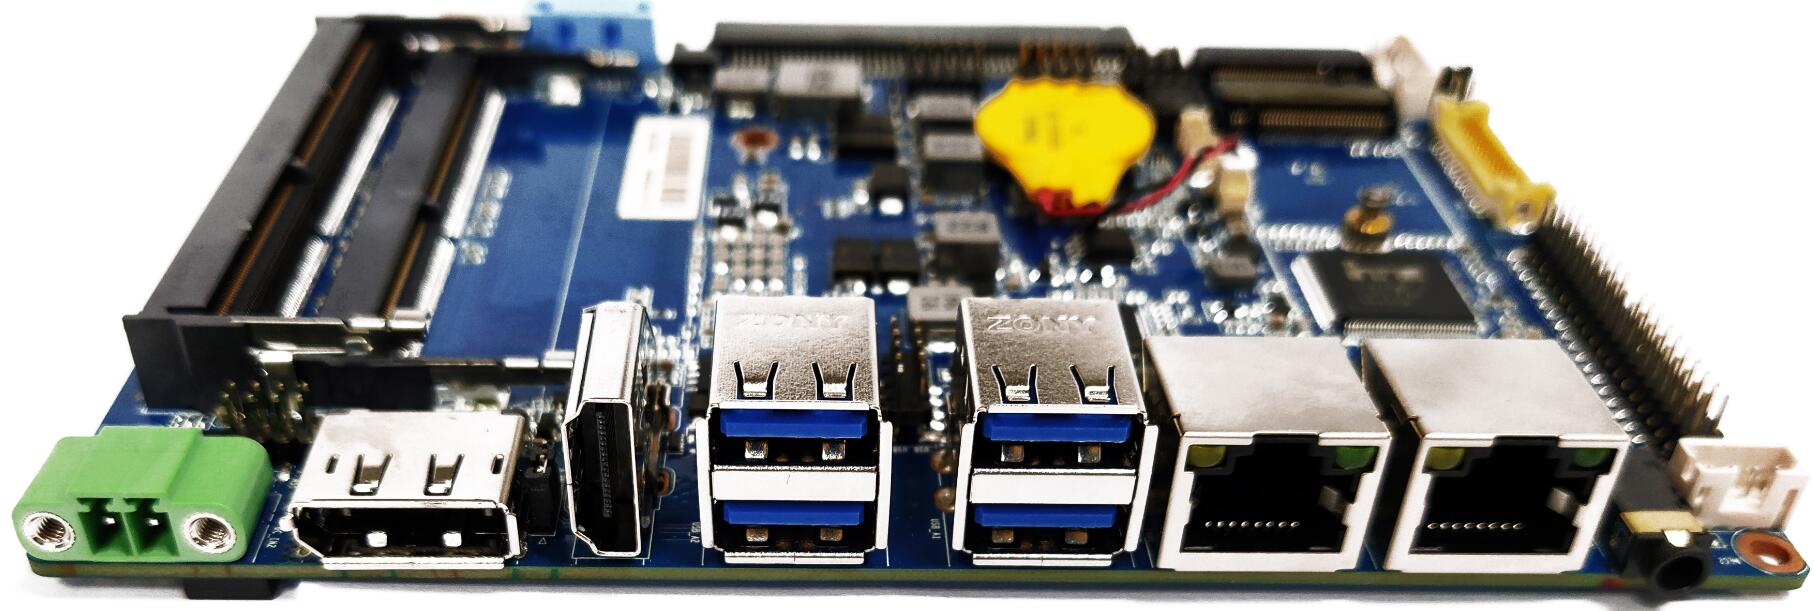 ZC35-EN4305DL 8th Gen Intel CPU 3.5'' Fanless Motherboard 6 COM Dual LAN